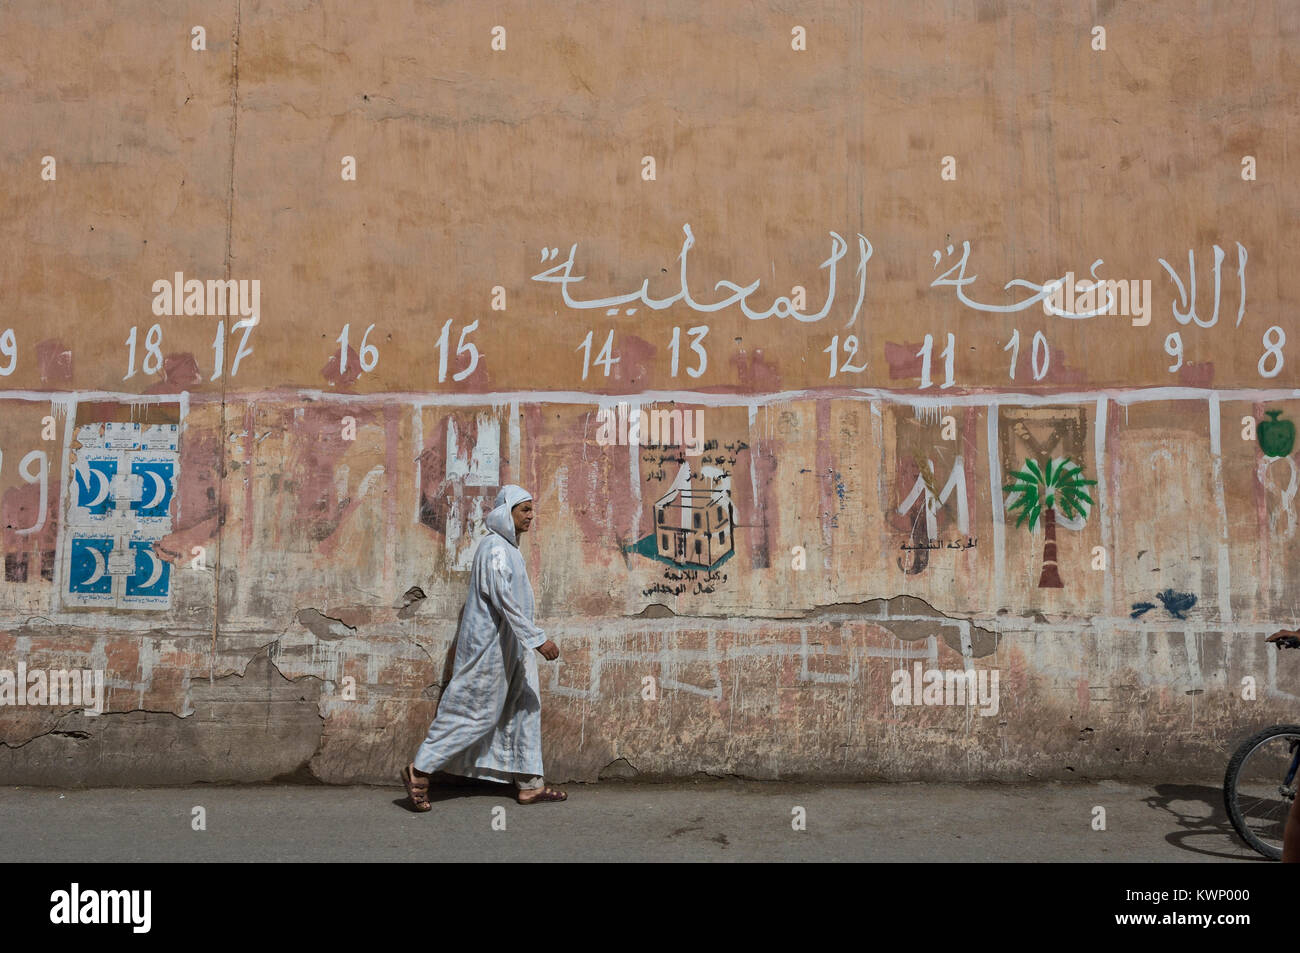 Mellah. L'ancien quartier juif de Marrakech. Le Maroc, l'Afrique du Nord Banque D'Images